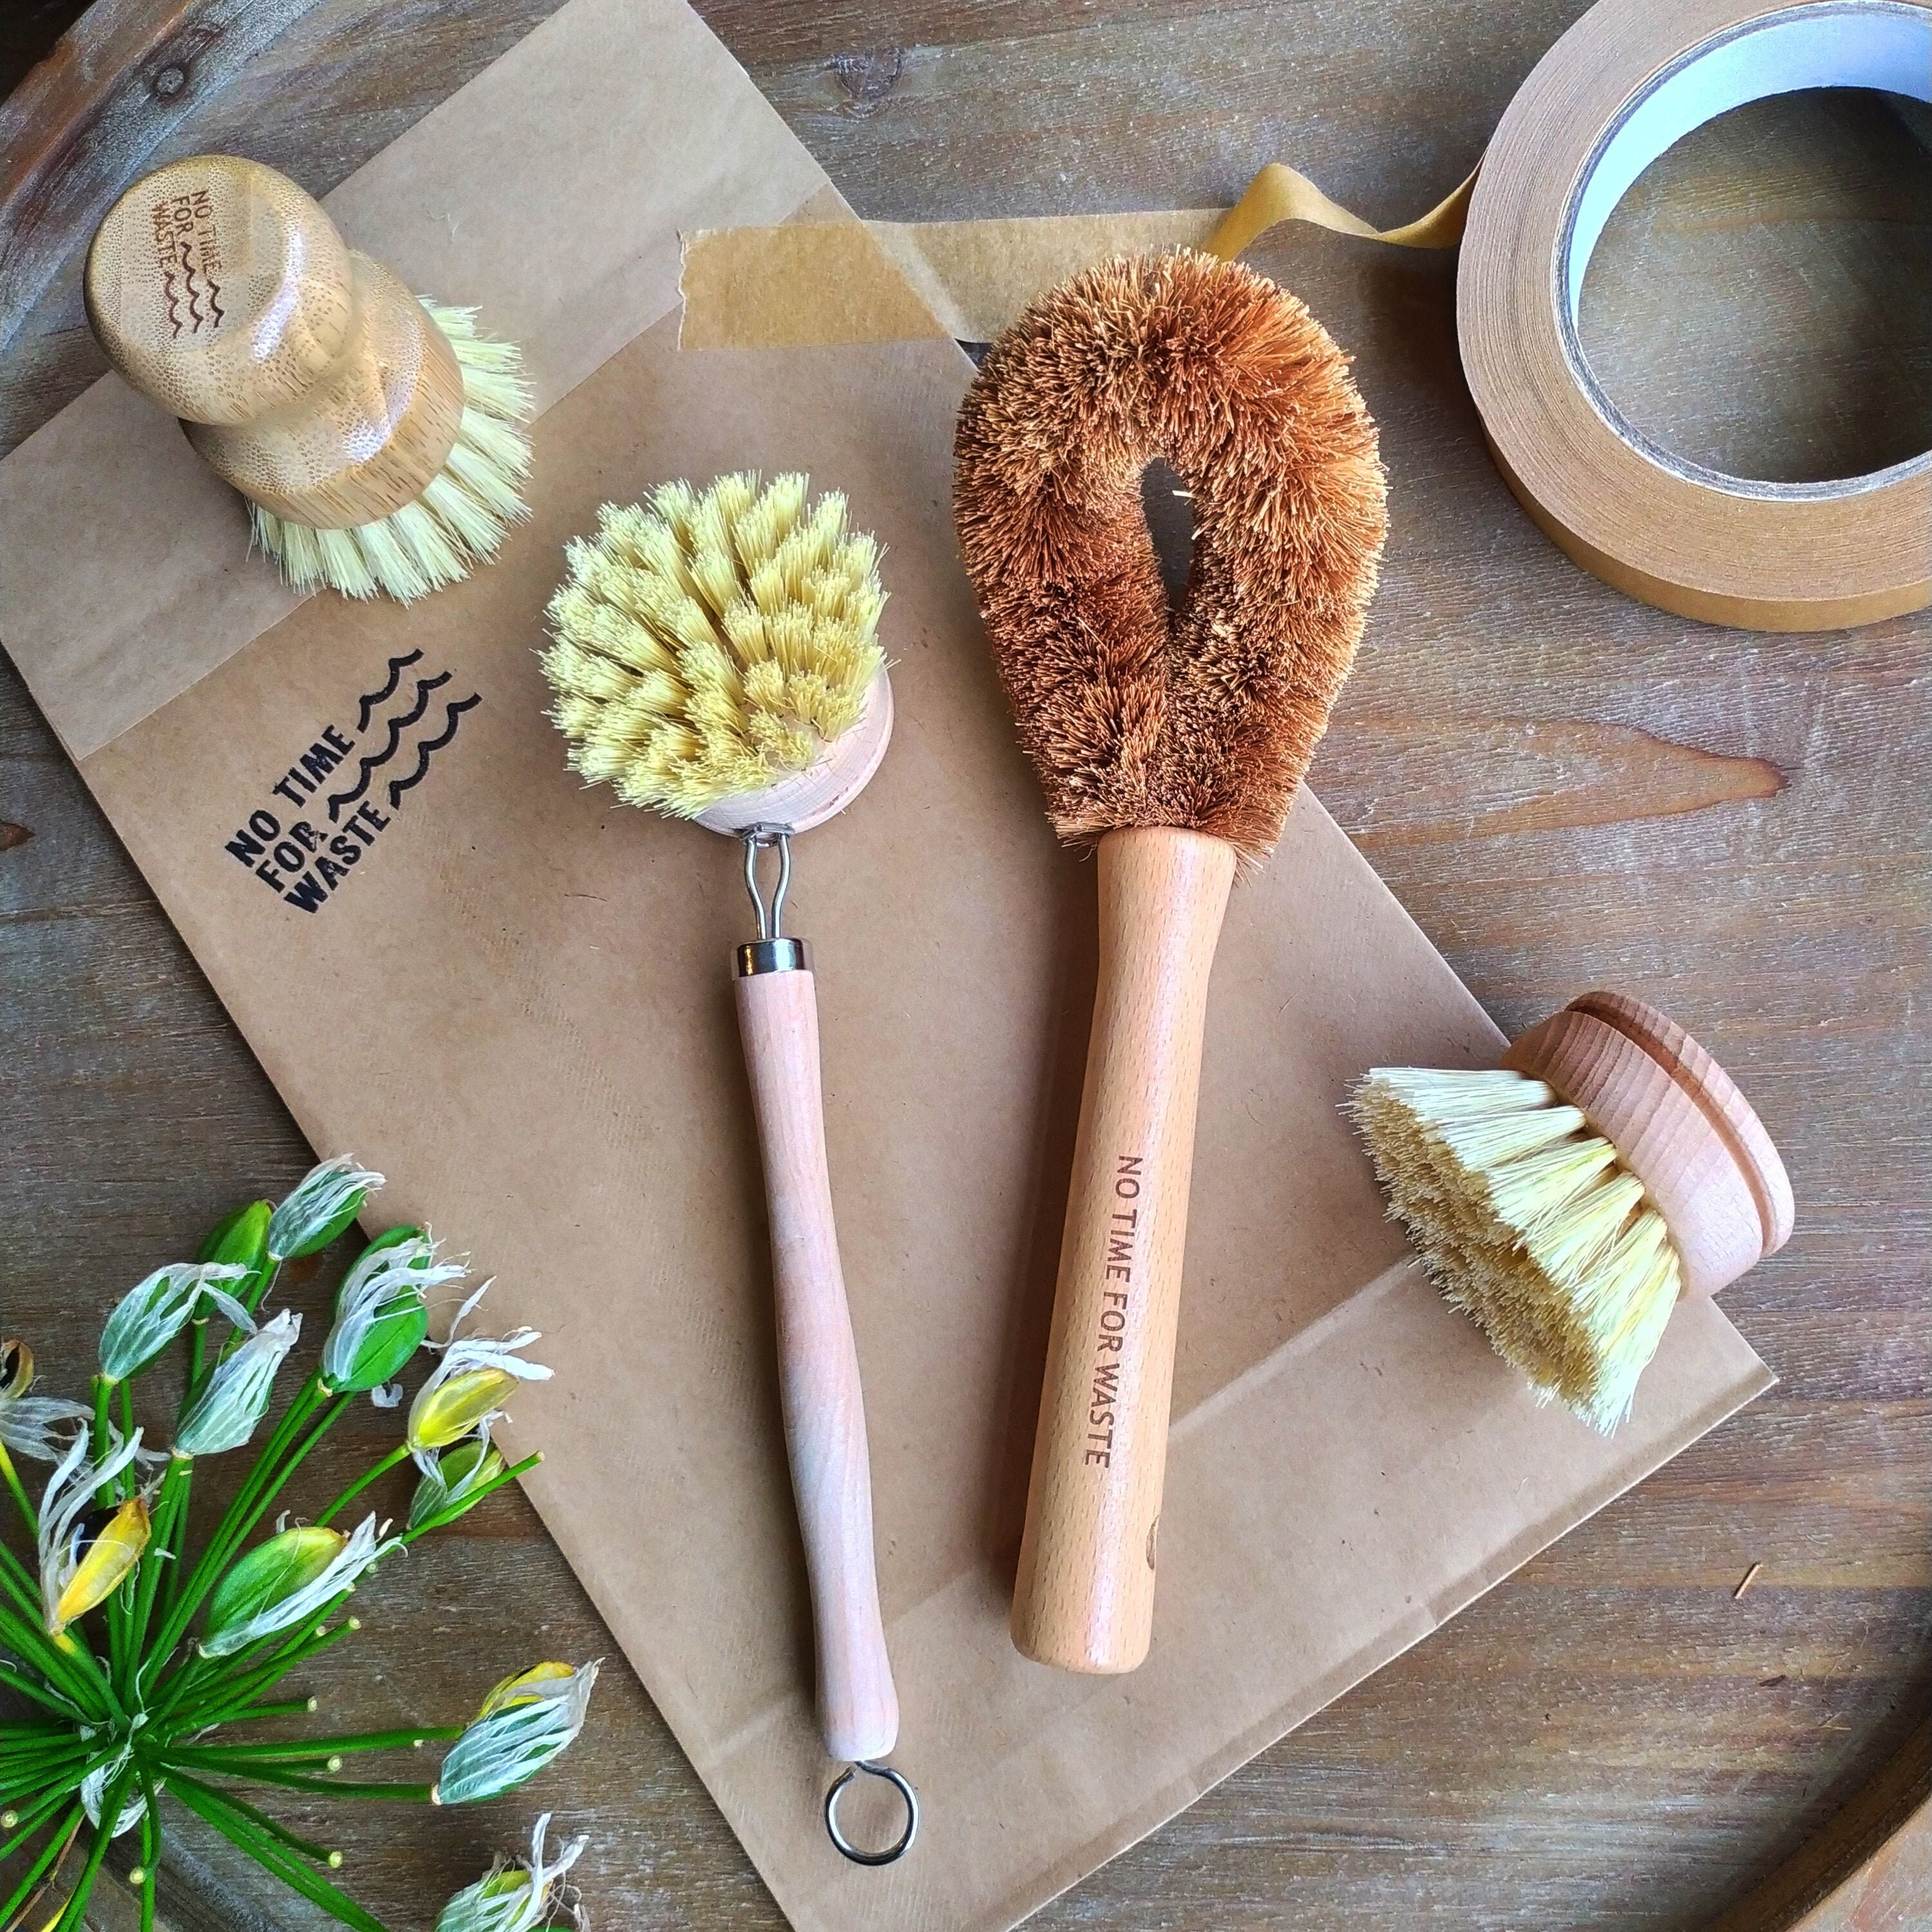 Cepillo de madera para platos de cocina de 8 piezas, incluye cepillo de  limpieza de bambú y cabezales de cepillo de repuesto, cepillo de platos  para